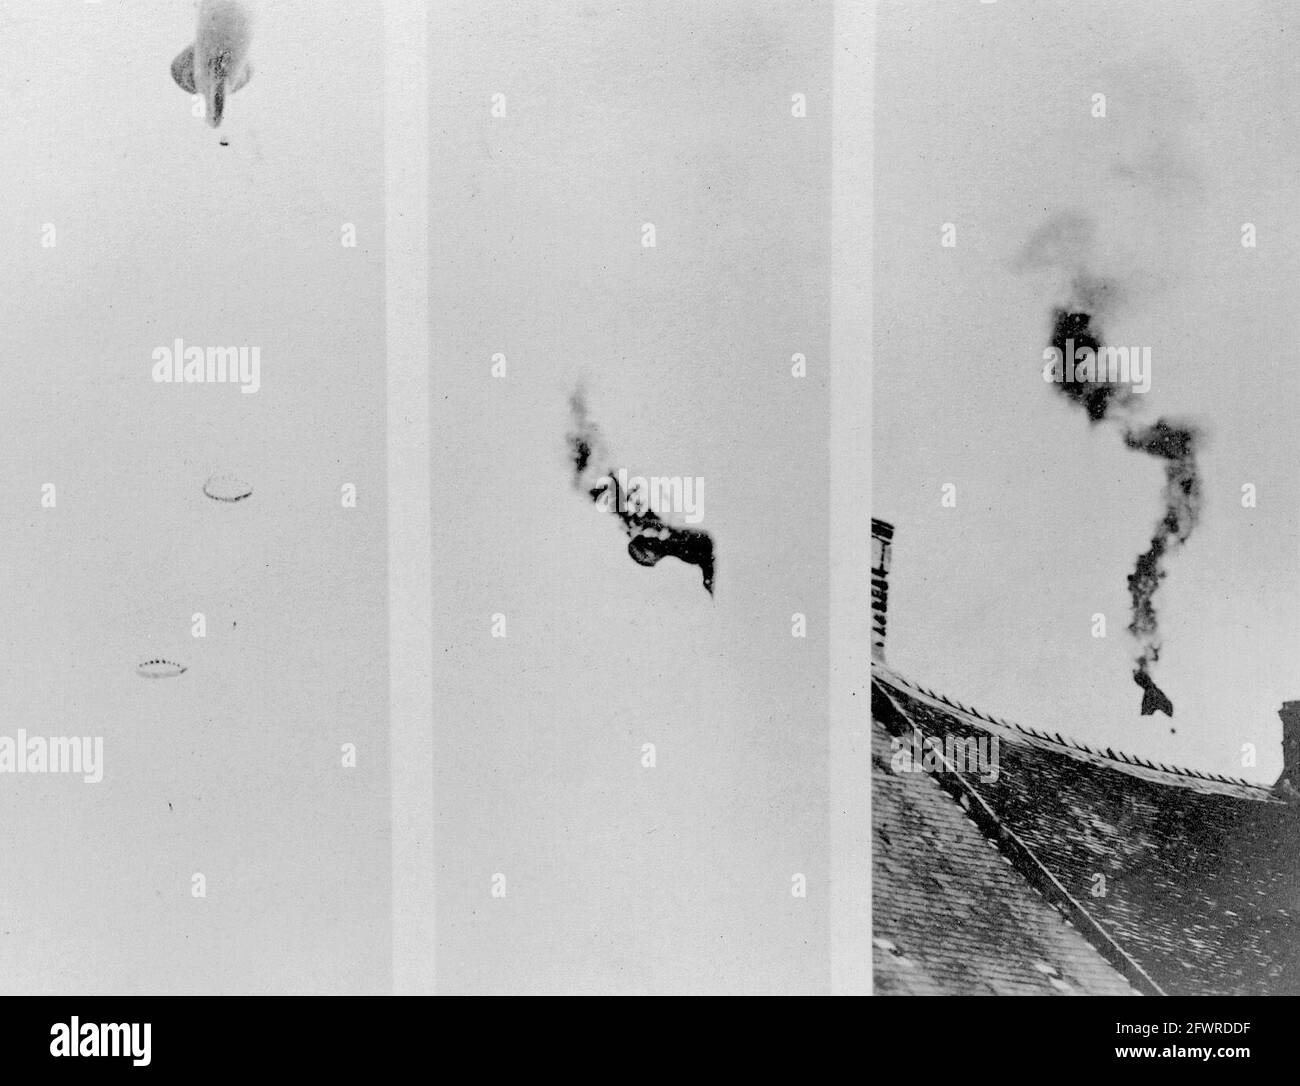 Un ballon d'observation américain ayant reçu des coups directs d'un avion allemand pendant la première Guerre mondiale. La photo de gauche montre les deux observateurs descendant en parachute; la photo du centre montre le ballon en flammes, et celle de droite, il plonge au sol. Banque D'Images